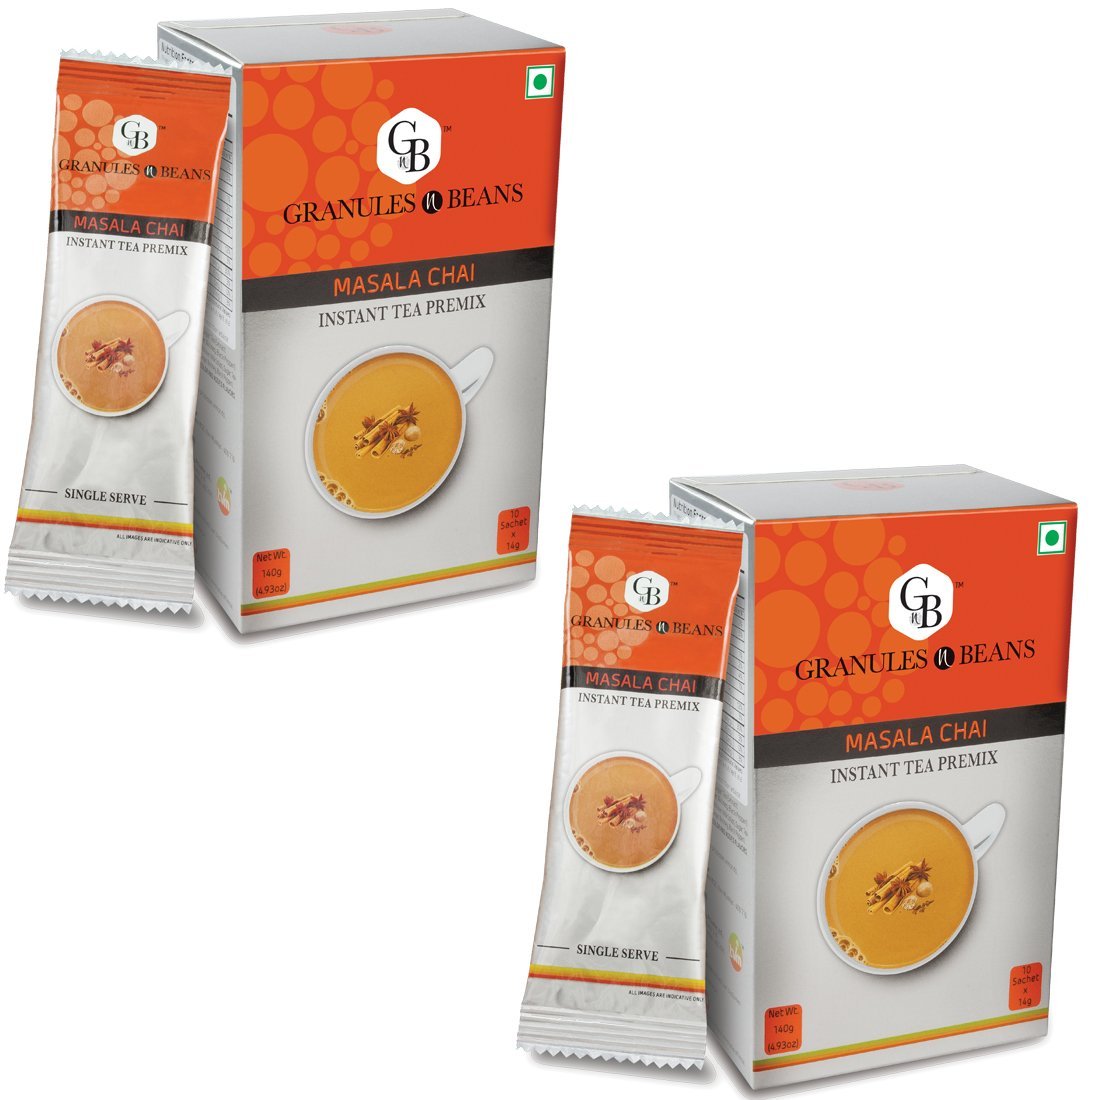 Granules n Beans Masala Chai Instant tea Premix - (10 Sachet x 14g = 140g) (Pack of 2)